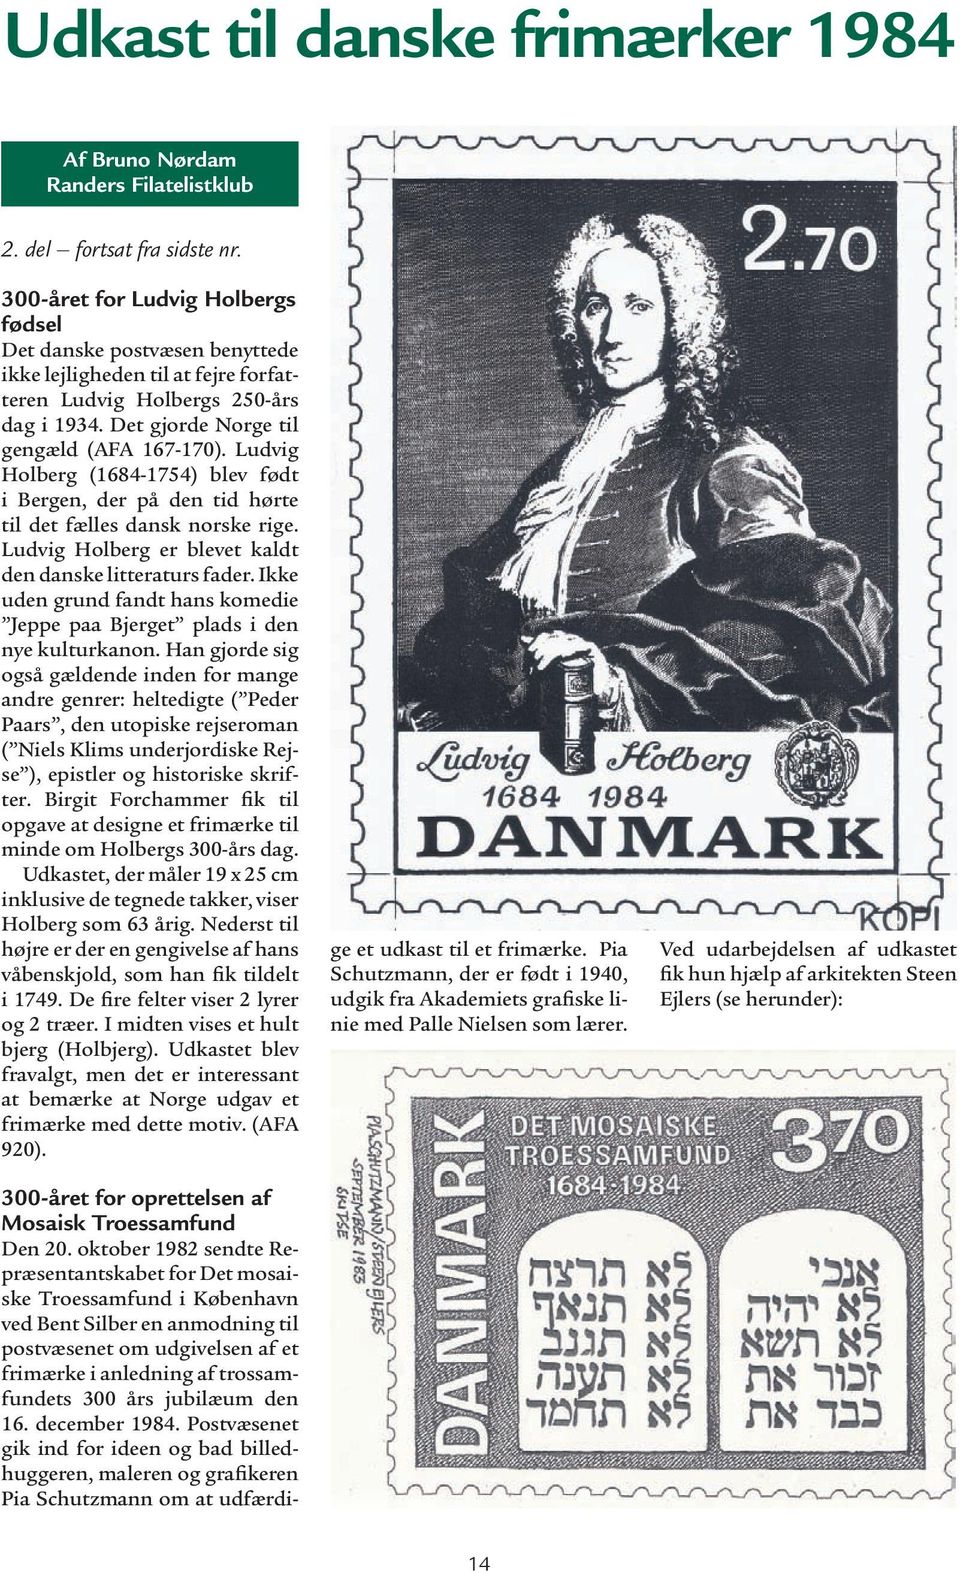 Ludvig Holberg (1684-1754) blev født i Bergen, der på den tid hørte til det fælles dansk norske rige. Ludvig Holberg er blevet kaldt den danske litteraturs fader.